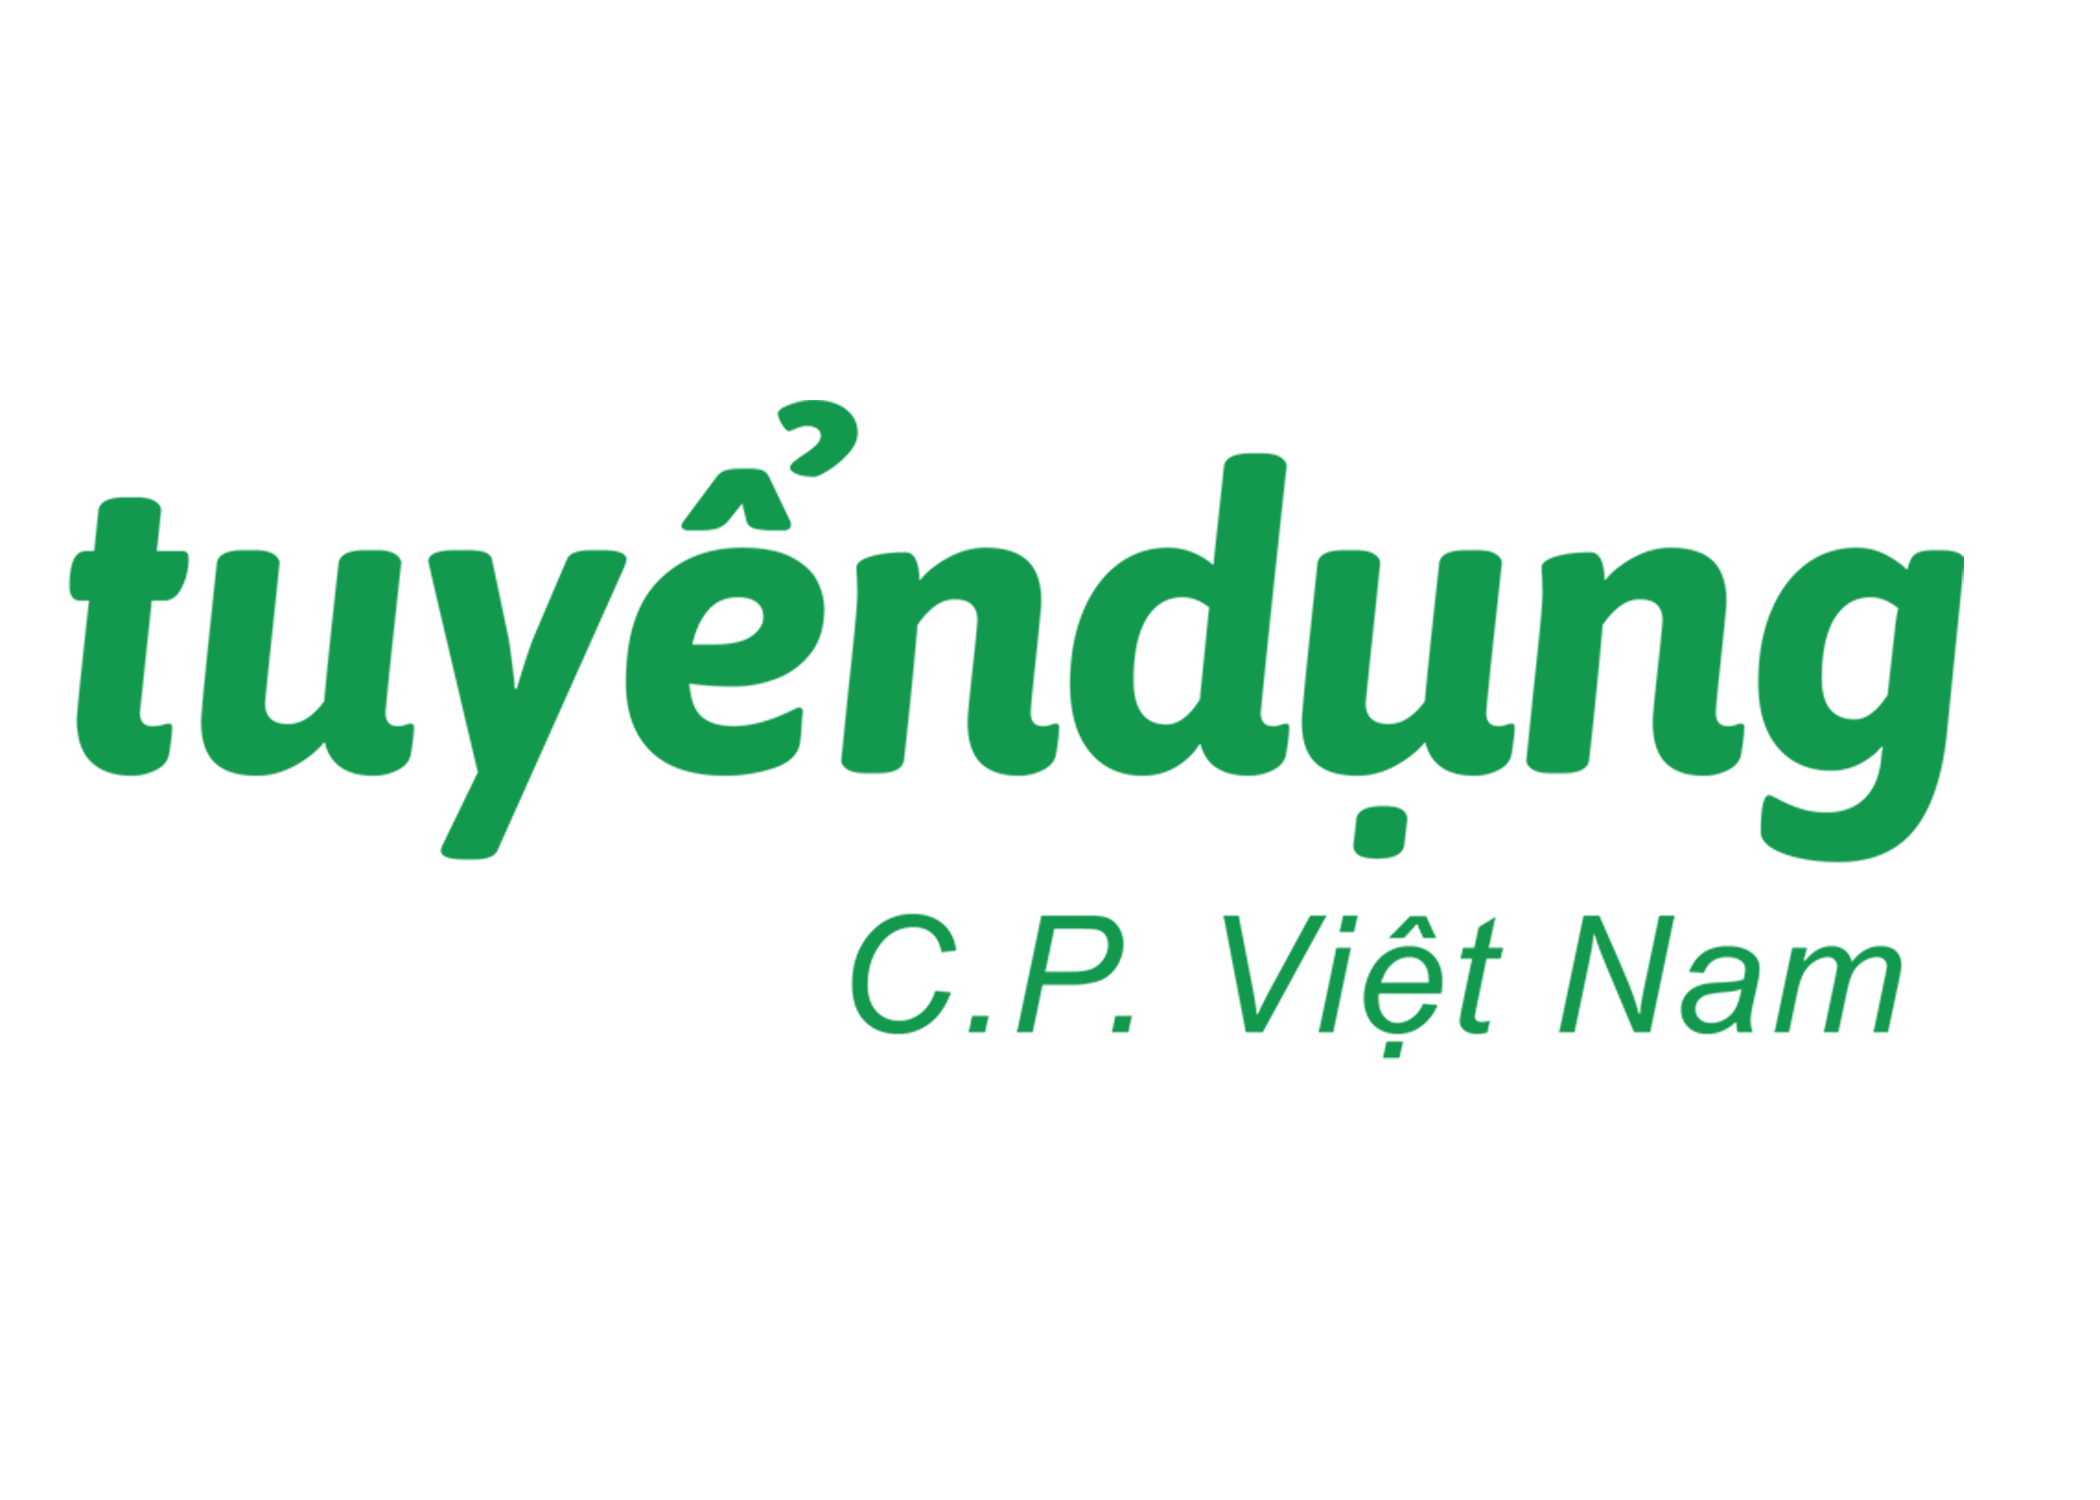 Công ty Cổ phần Chăn nuôi C.P. Việt Nam